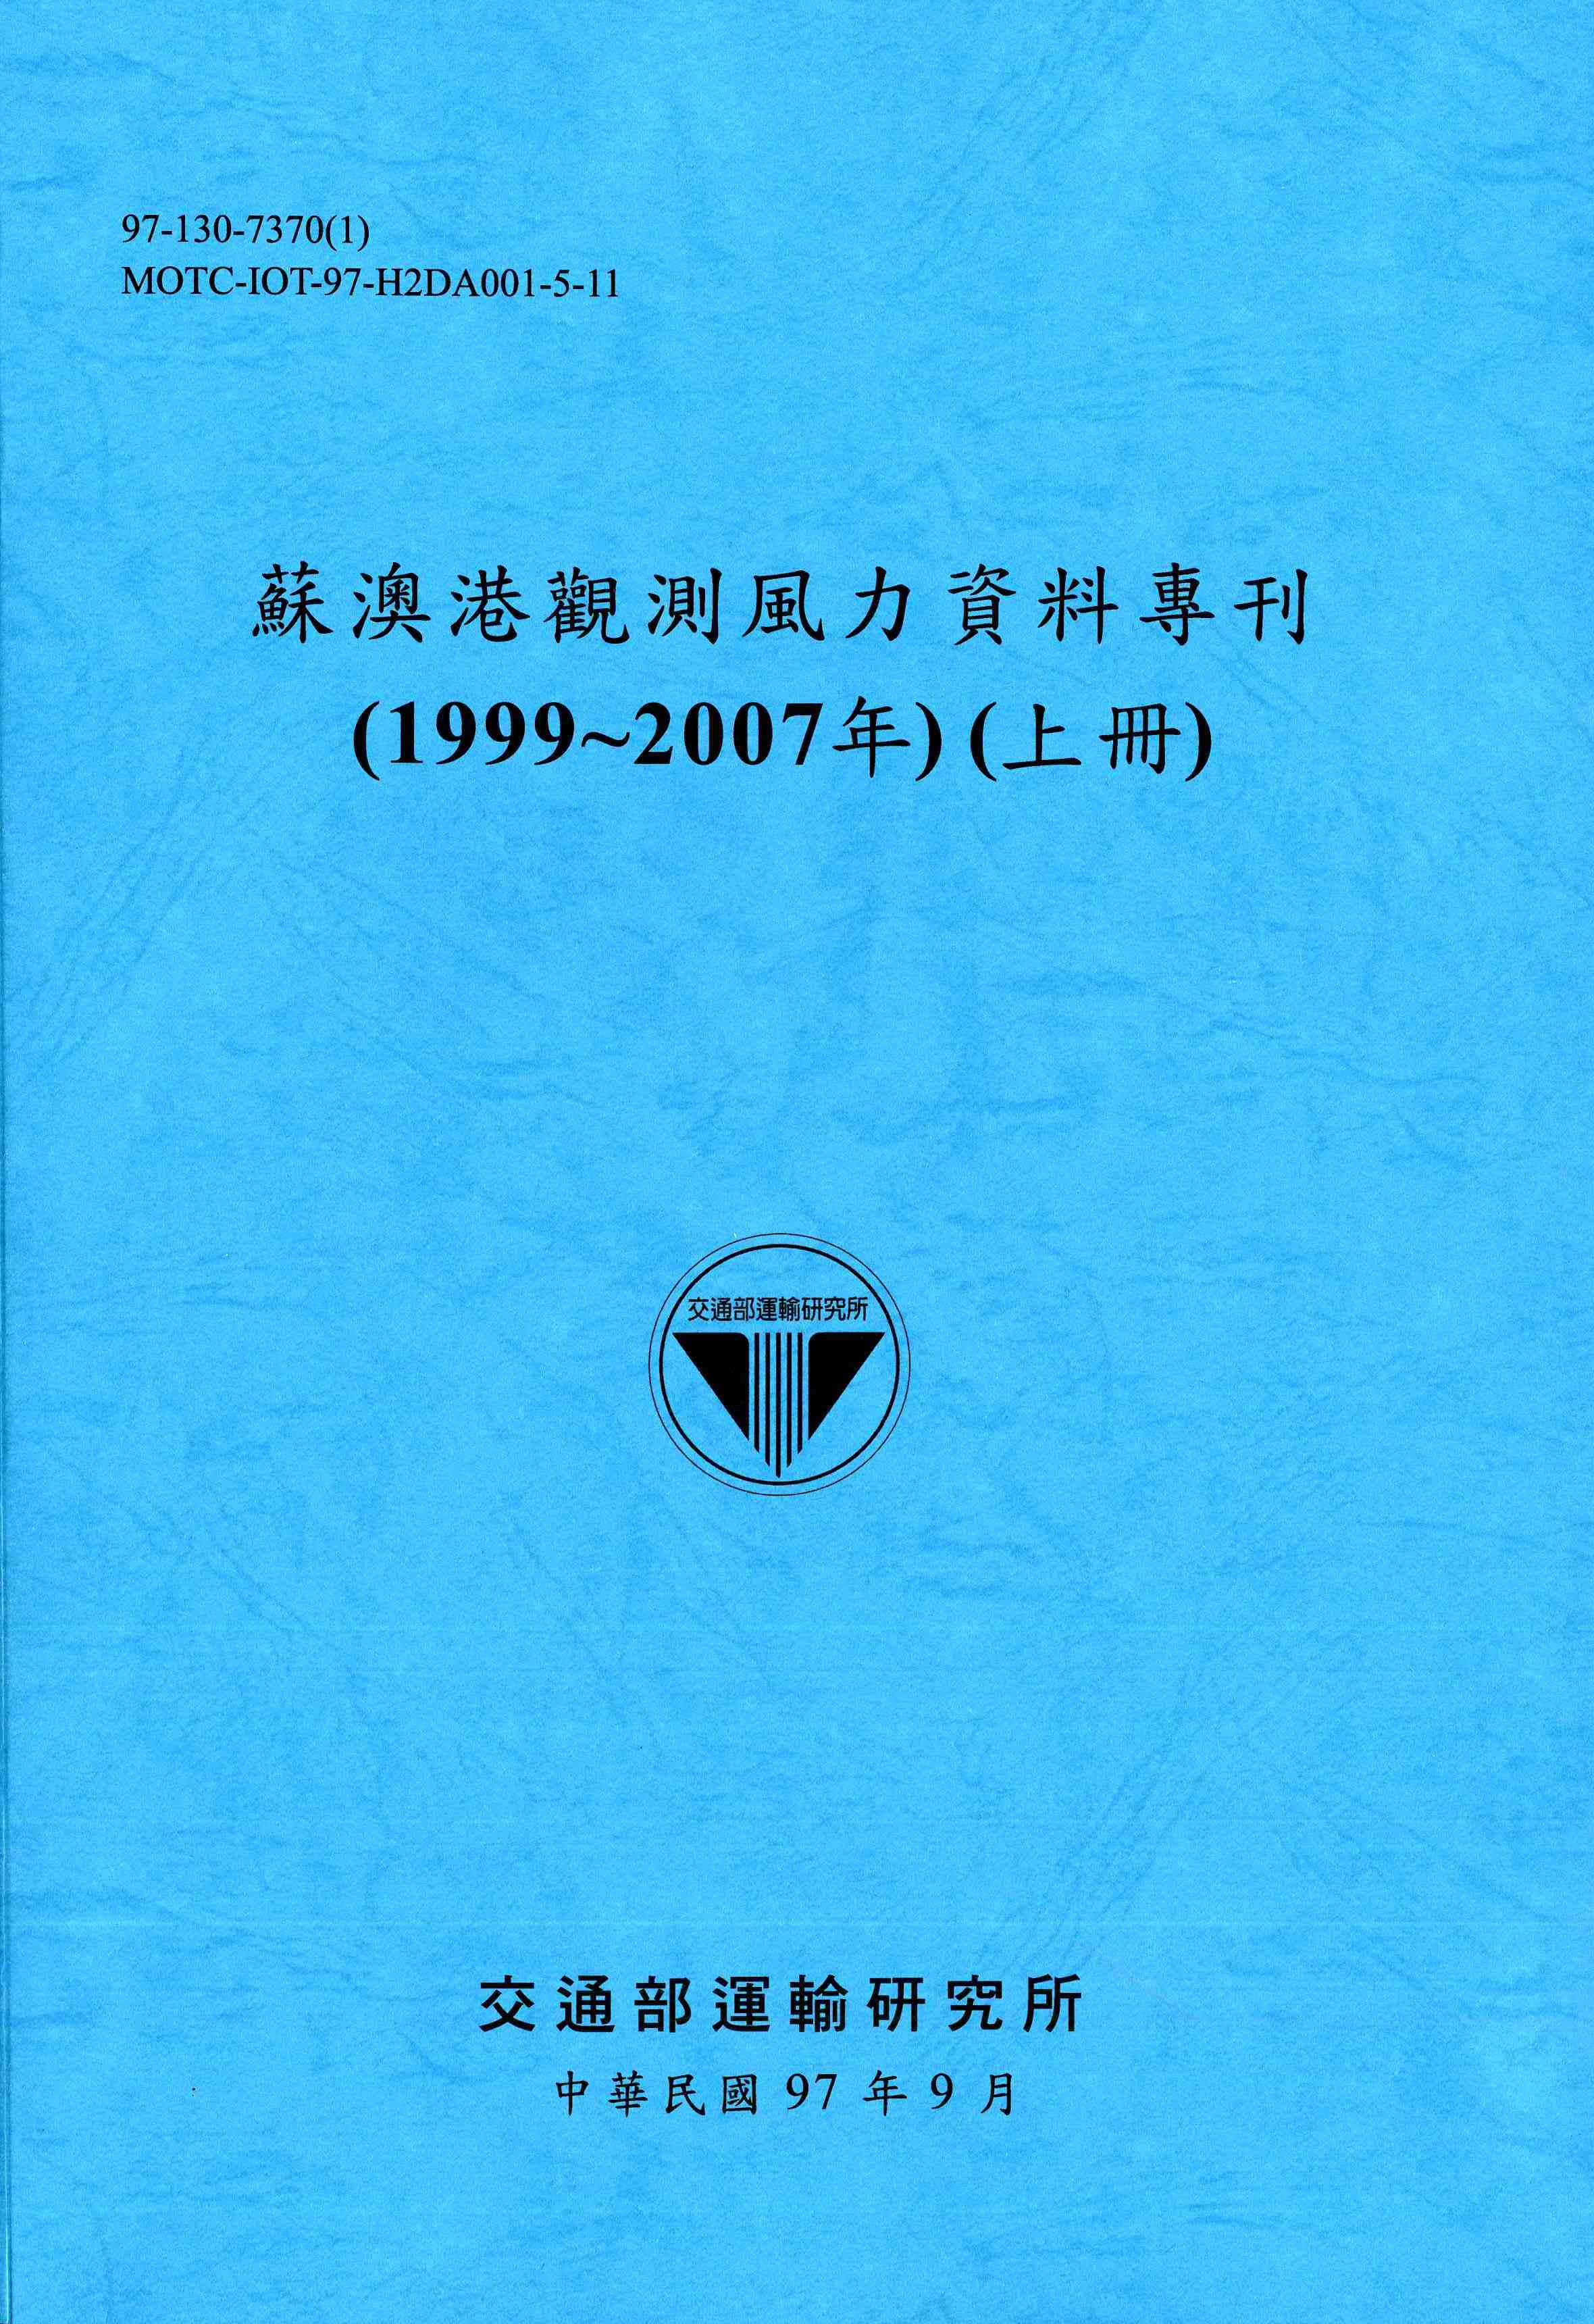 蘇澳港觀測風力資料專刊(1999~2007年)(上冊)